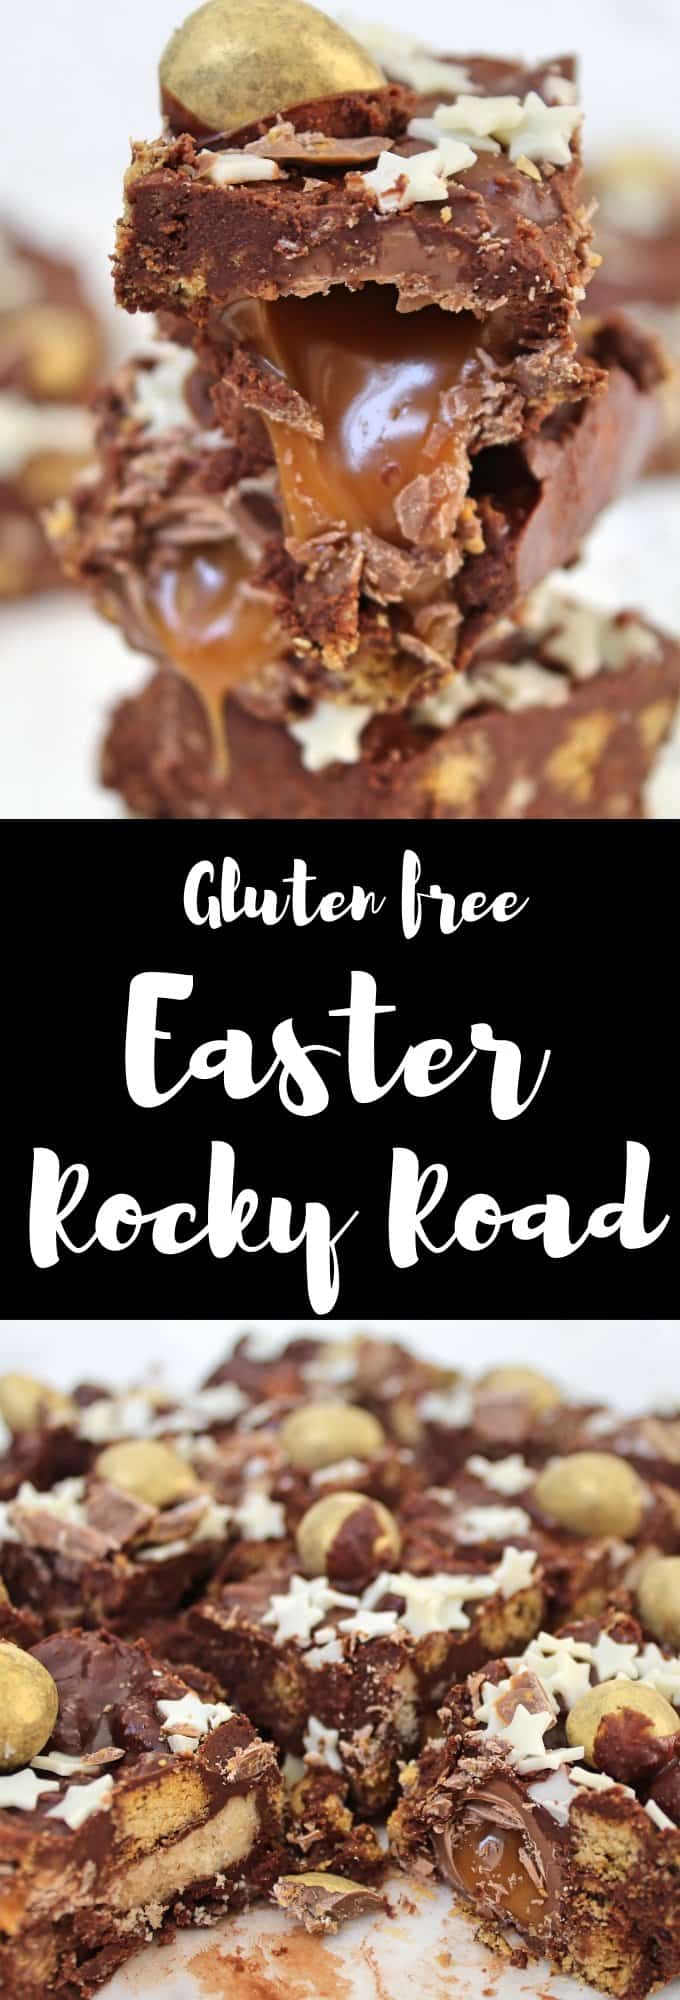 gluten free easter rocky road recipe